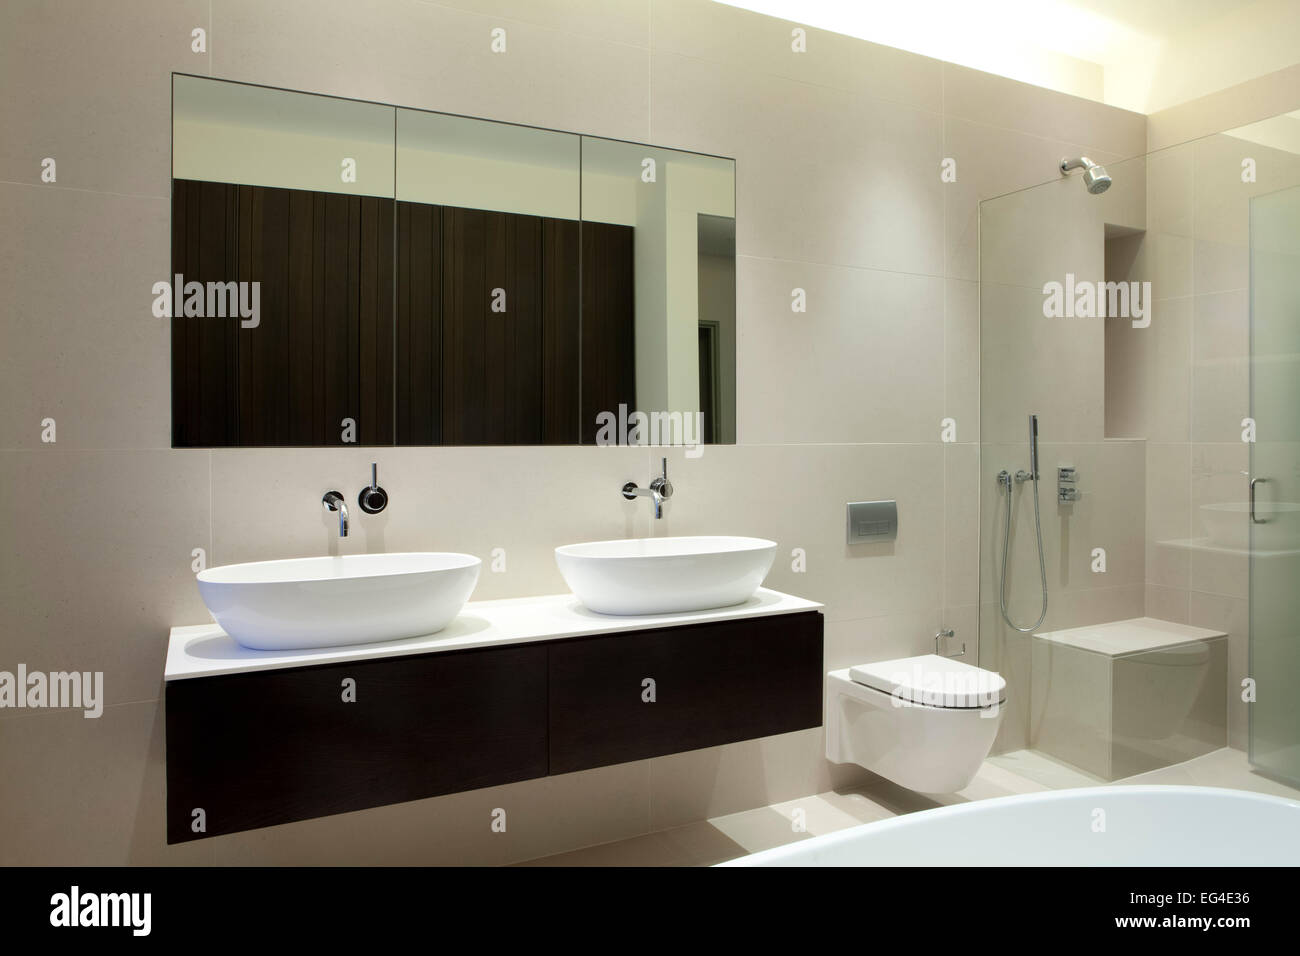 Salle de bains, conception, design intérieur moderne, lavabo, toilette, douche, miroir de salle de bains Banque D'Images